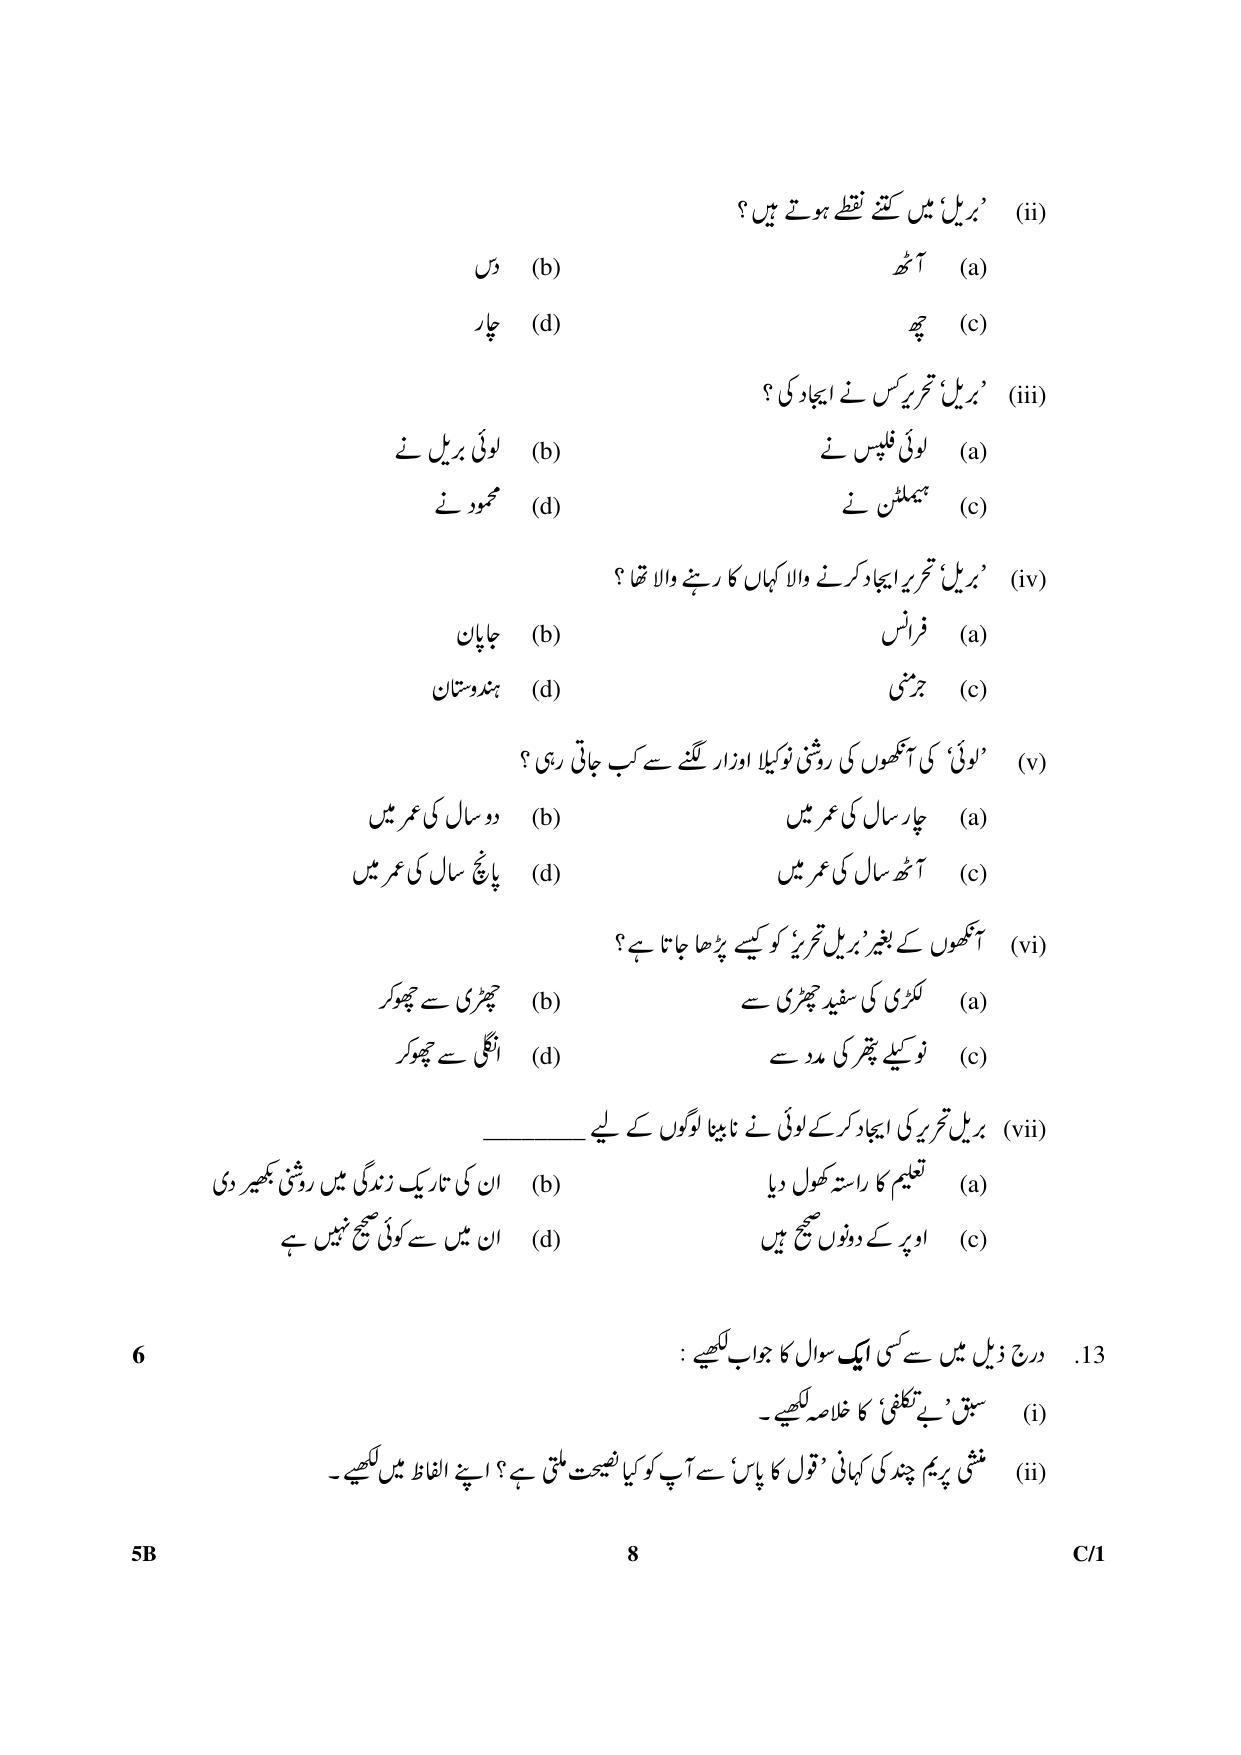 CBSE Class 10 5B Urdu (Course B) 2018 Compartment Question Paper - Page 8